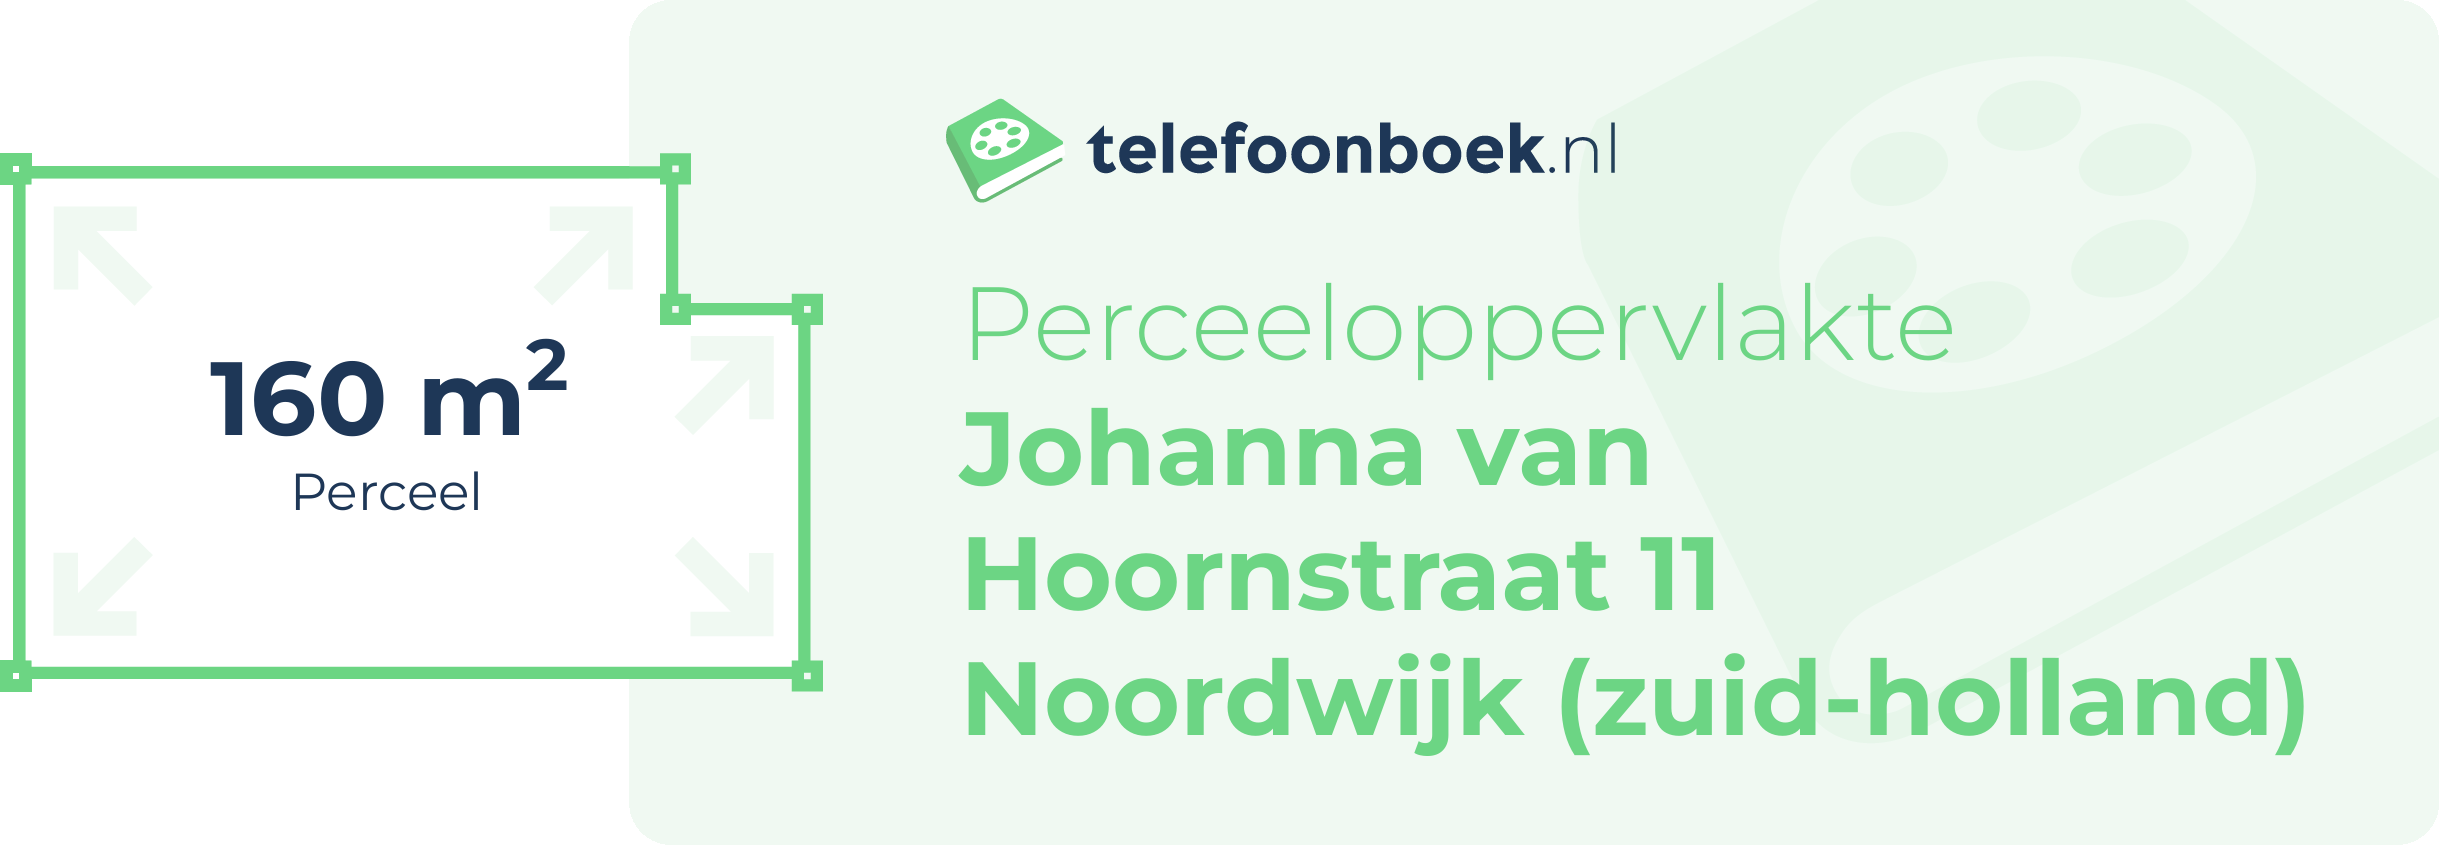 Perceeloppervlakte Johanna Van Hoornstraat 11 Noordwijk (Zuid-Holland)